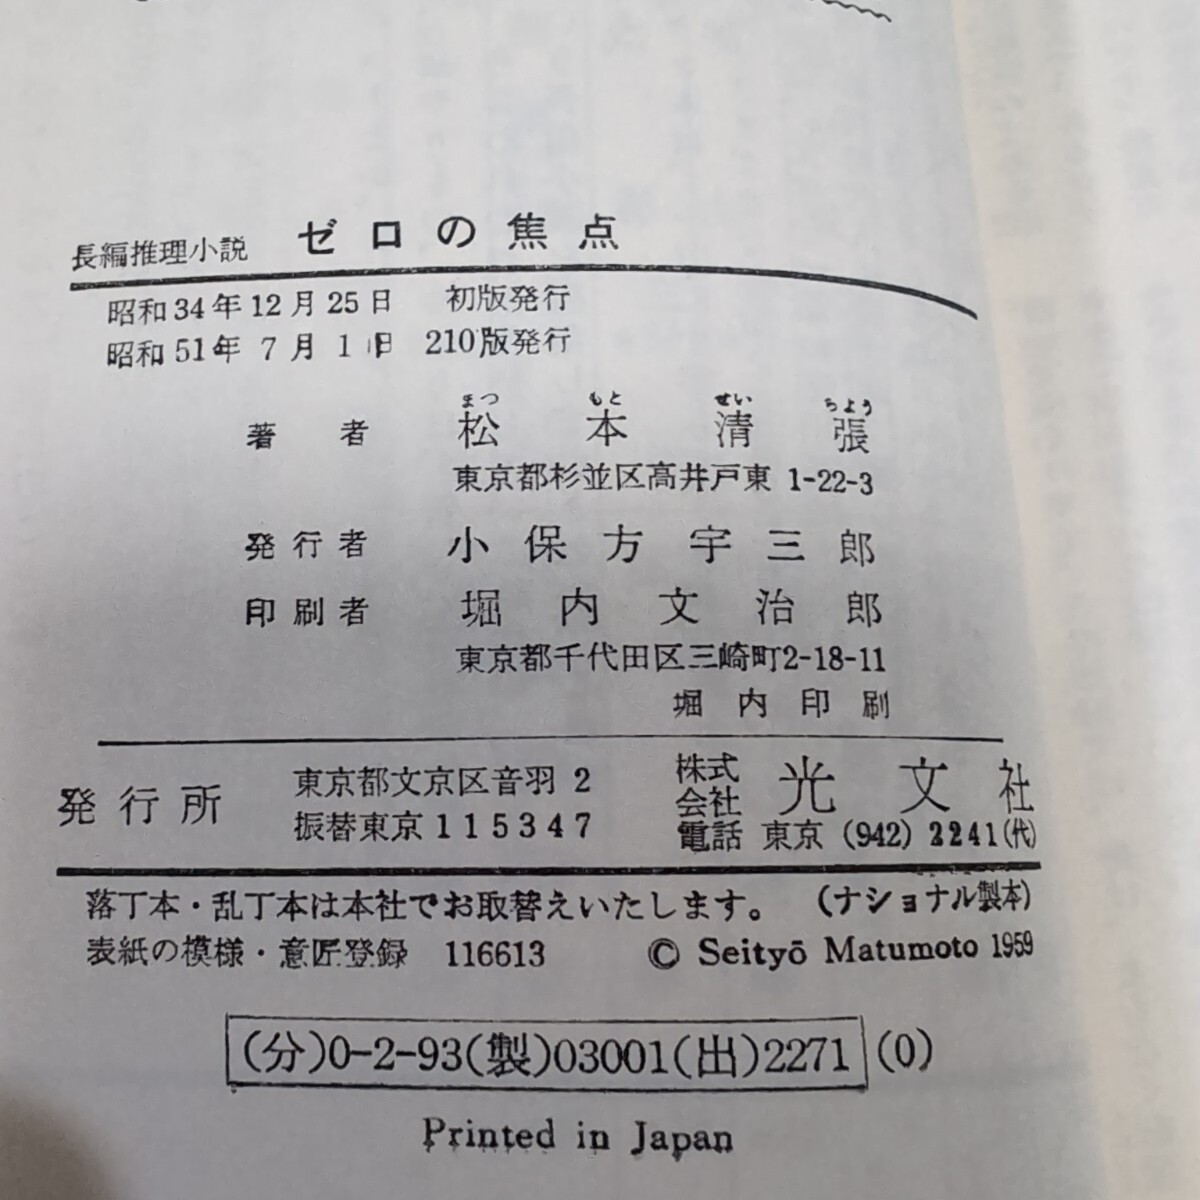 「ゼロの焦点」松本清張 光文社 昭和51年7月1日 210版発行_画像9